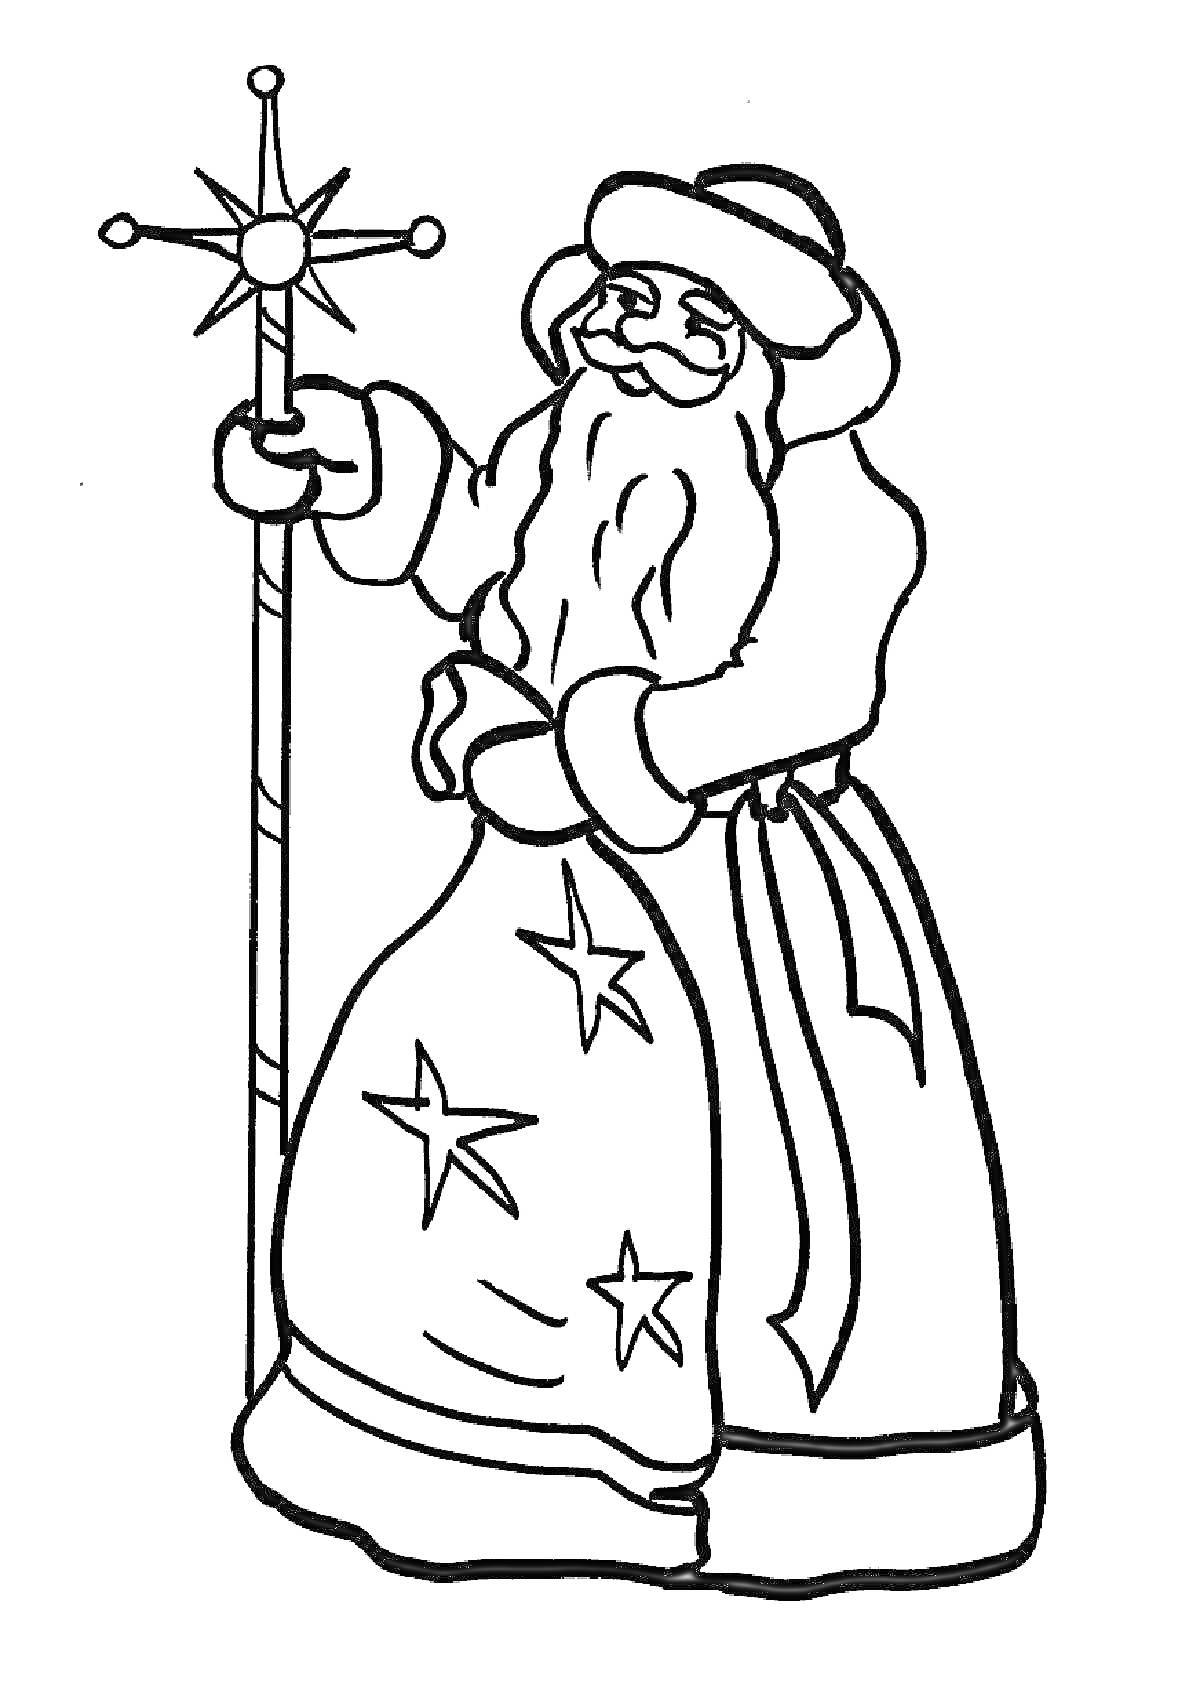 Раскраска Мороз Иванович с посохом, звезда на посохе, шапка с отделкой, длинная борода, длинная шуба с вышивкой в виде звезд